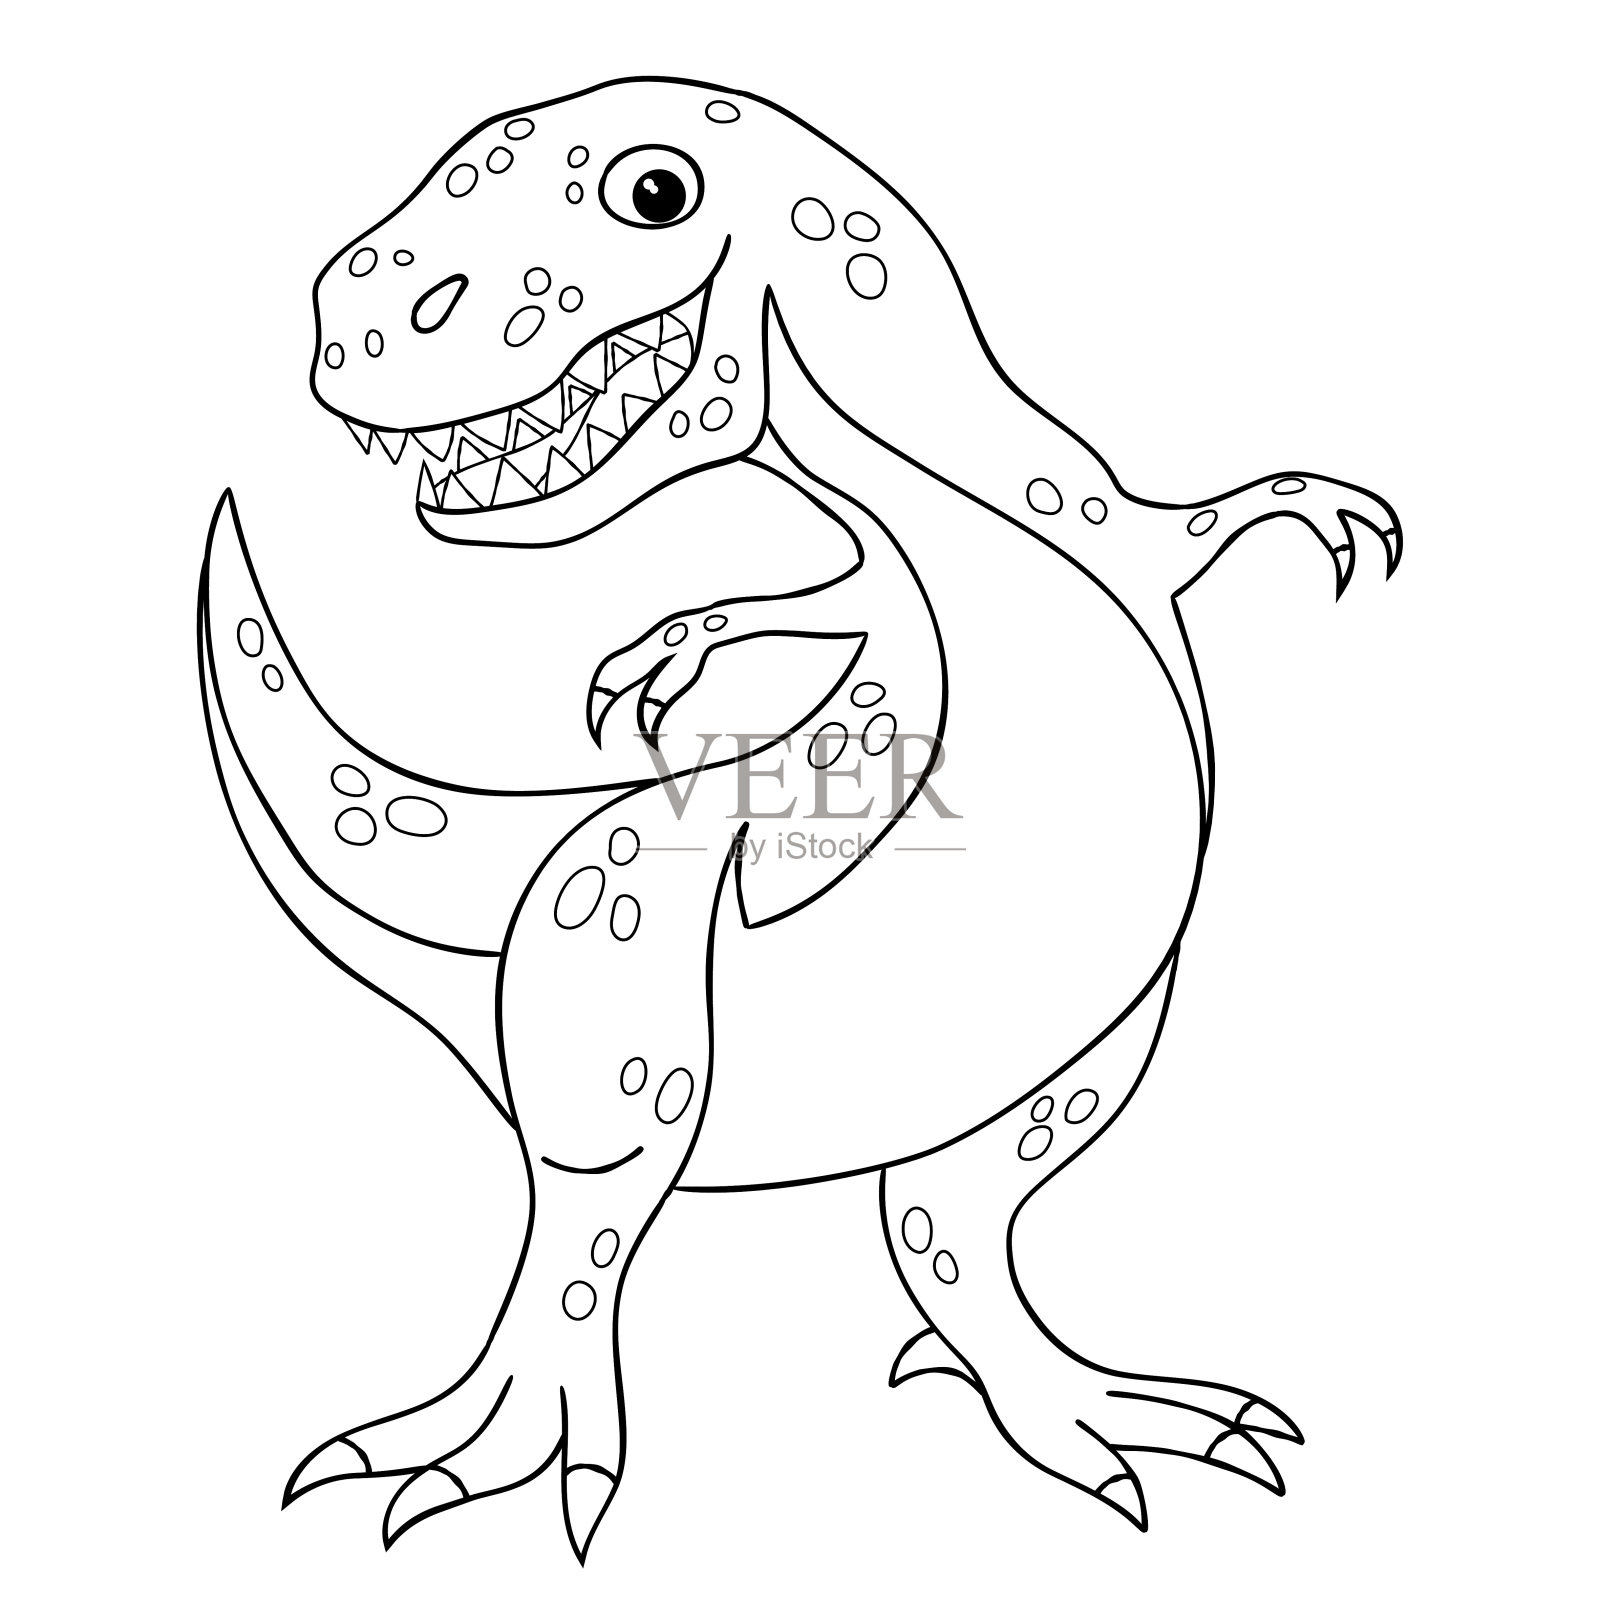 霸王龙恐龙的轮廓图。插画图片素材